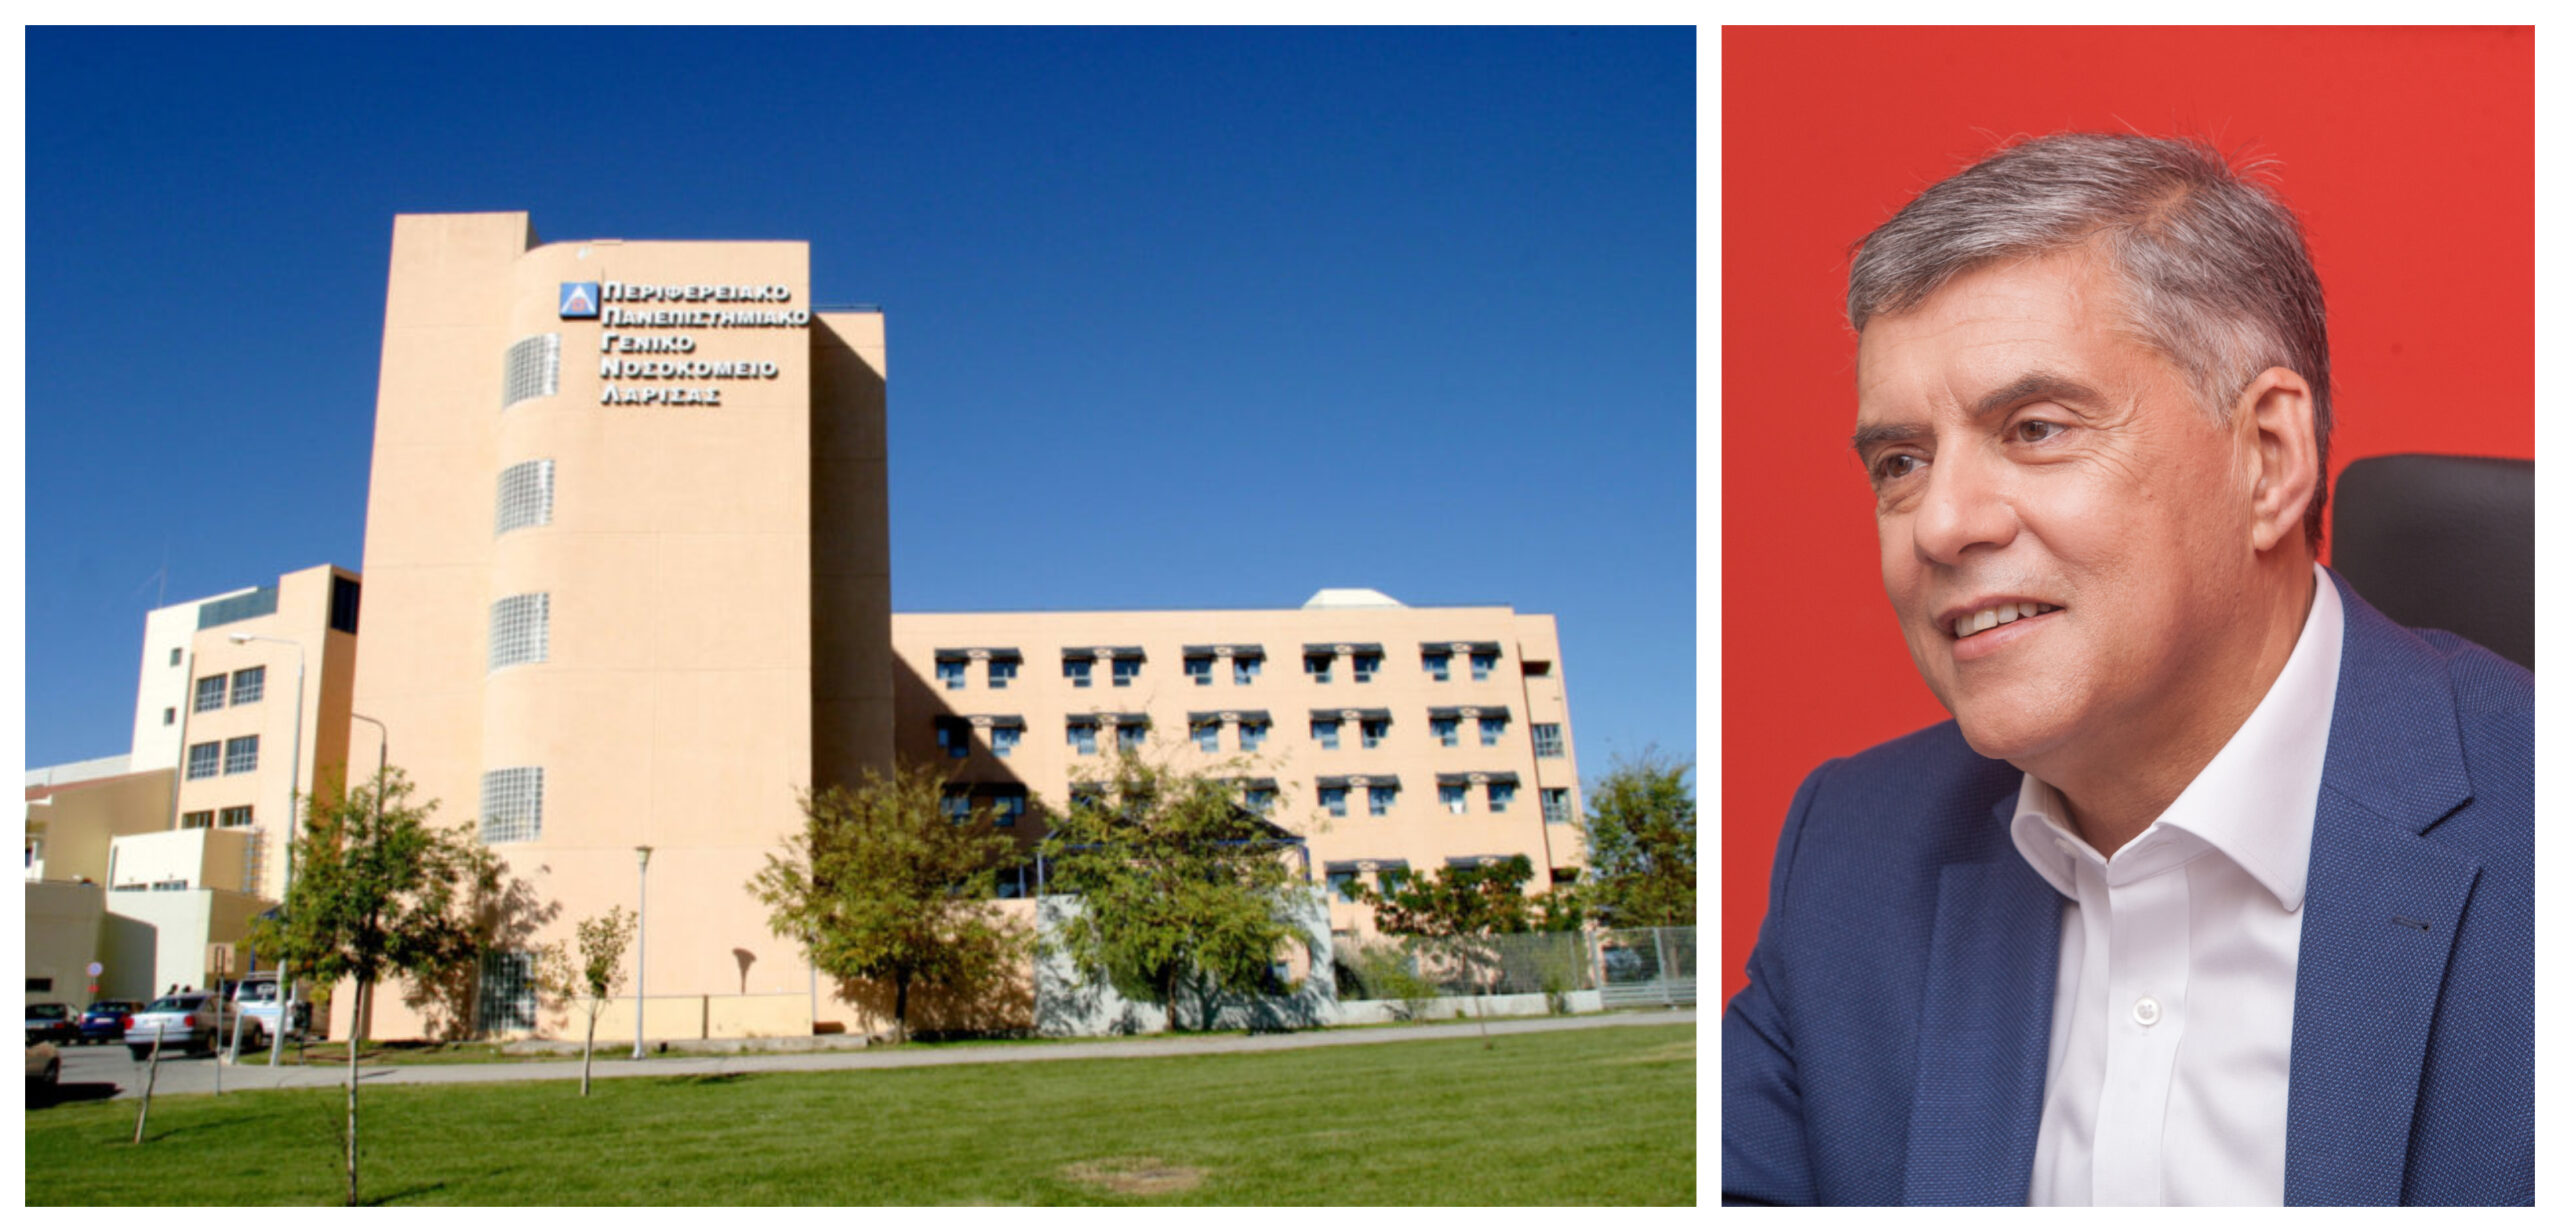 1,2 εκατομμύριο ευρώ από το ΕΣΠΑ Θεσσαλίας για τον εξοπλισμό της ΜΕΘ του Πανεπιστημιακού Νοσοκομείου Λάρισας